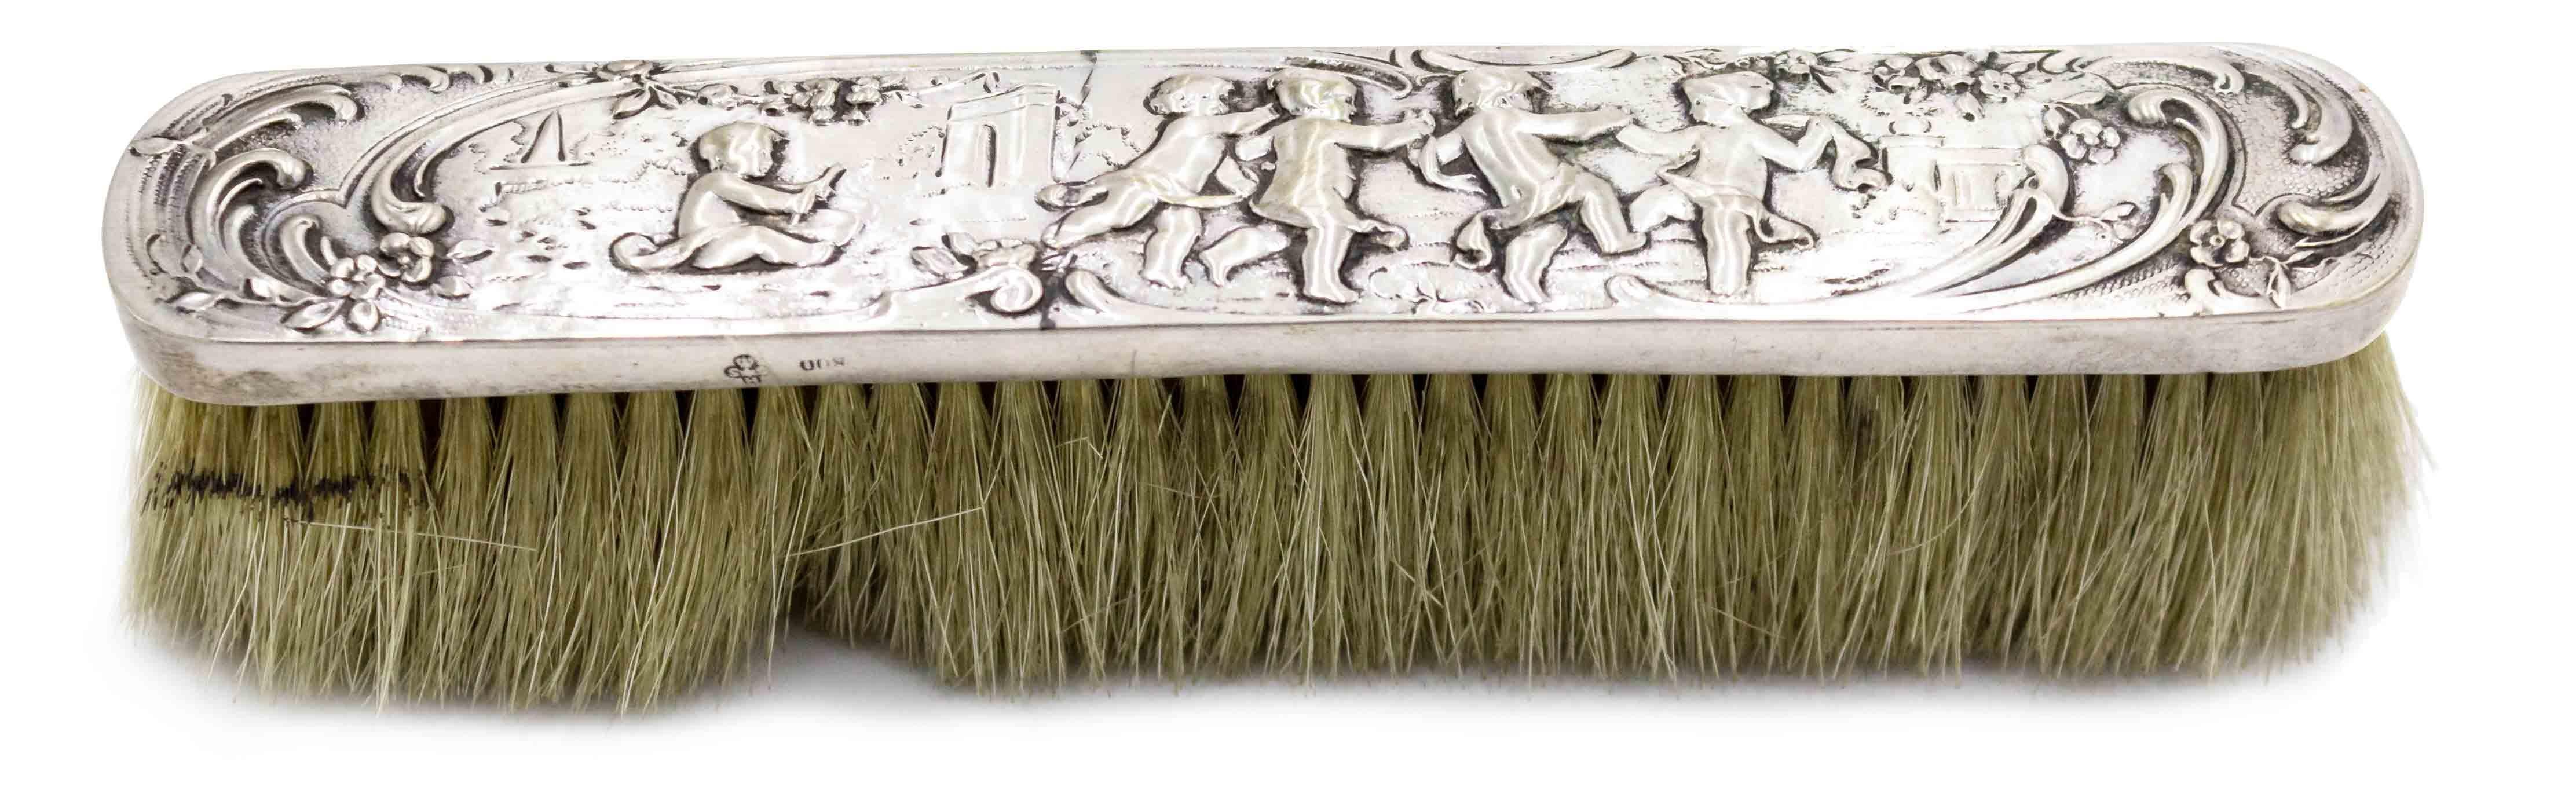 4-tlg. französischer Louis XV-Stil (19. Jh.) silbernes Eitelkeitsbürsten-Set mit Amor-Motiv (2 Kleider- und 2 Haarbürsten) Punziert mit deutschen 800er-Marken.